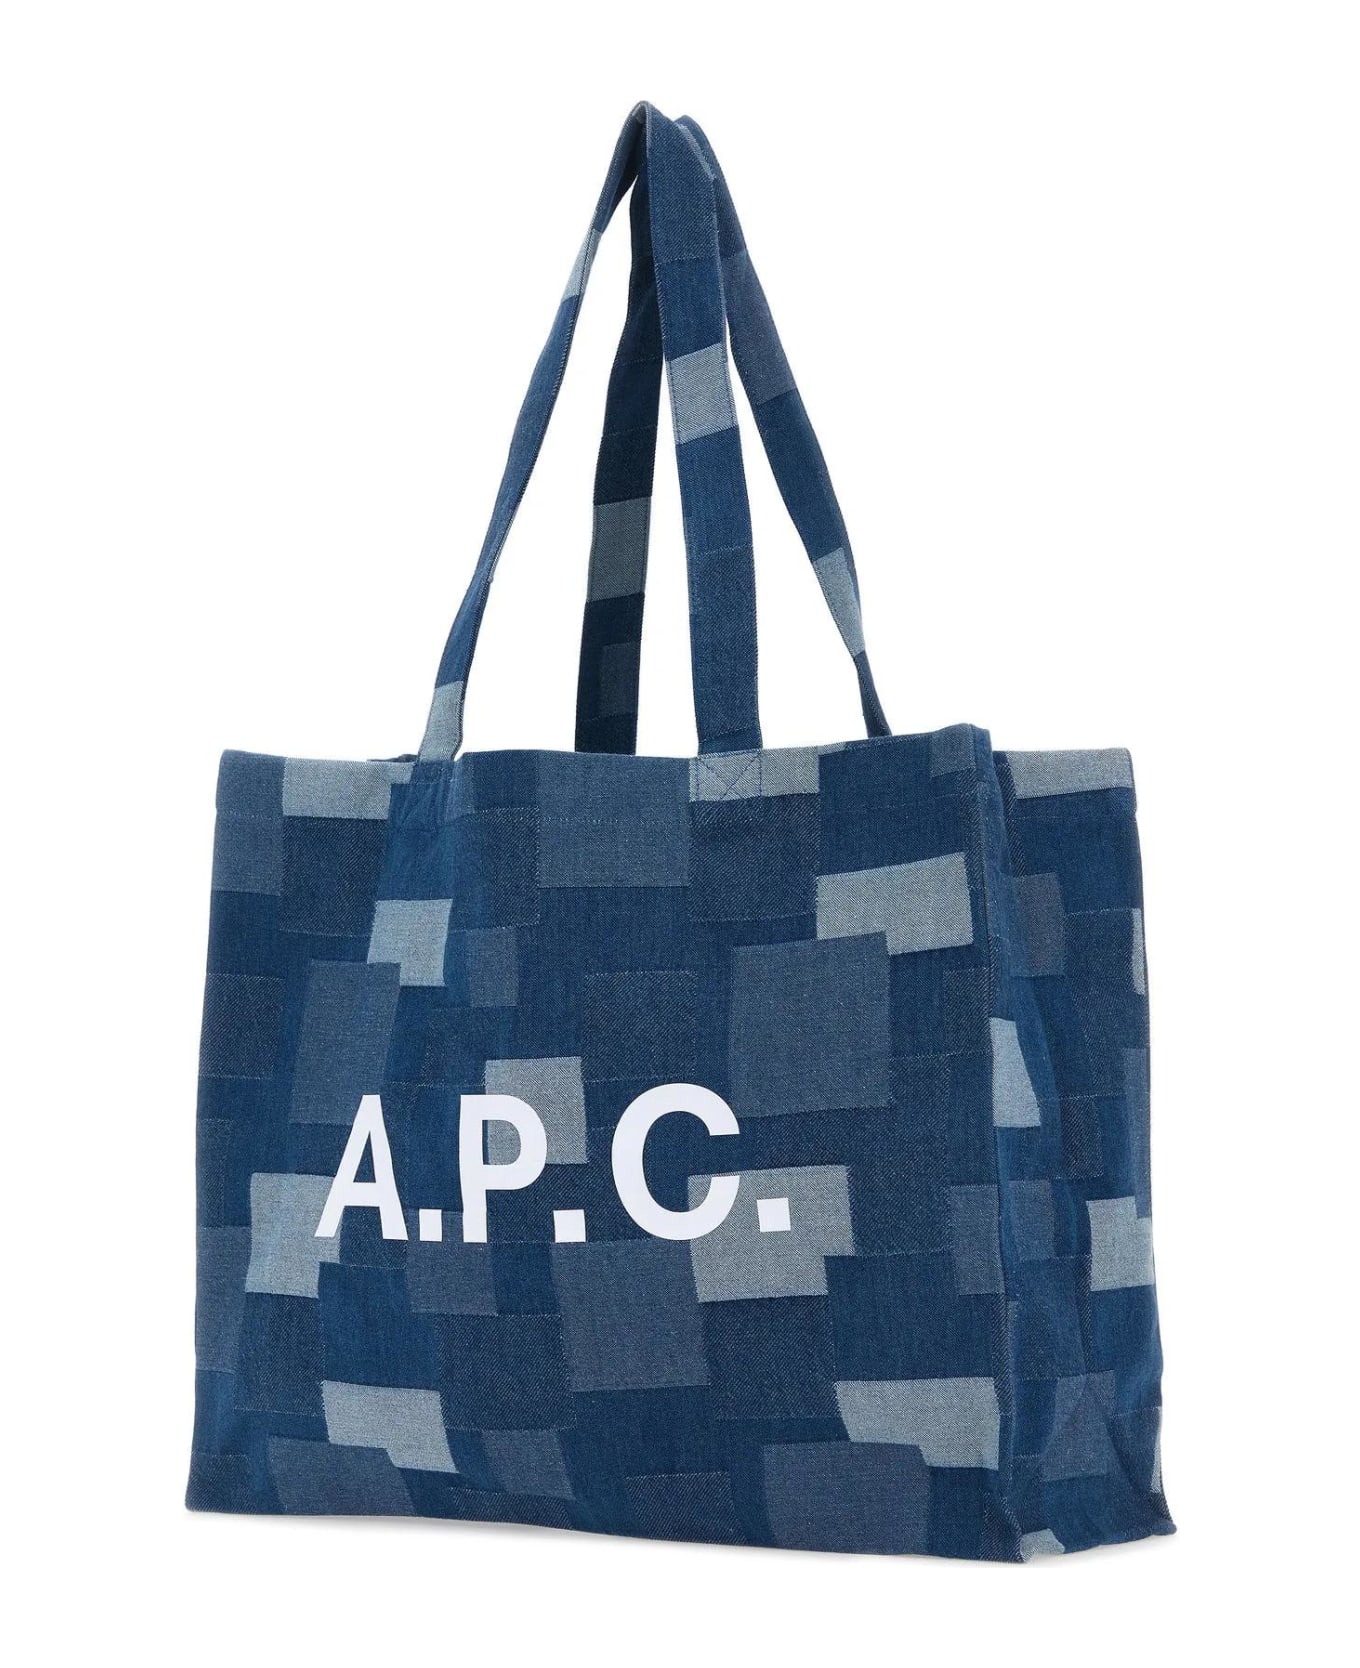 A.P.C. Diane Shopping Bag - Ial Indigo Delave トートバッグ